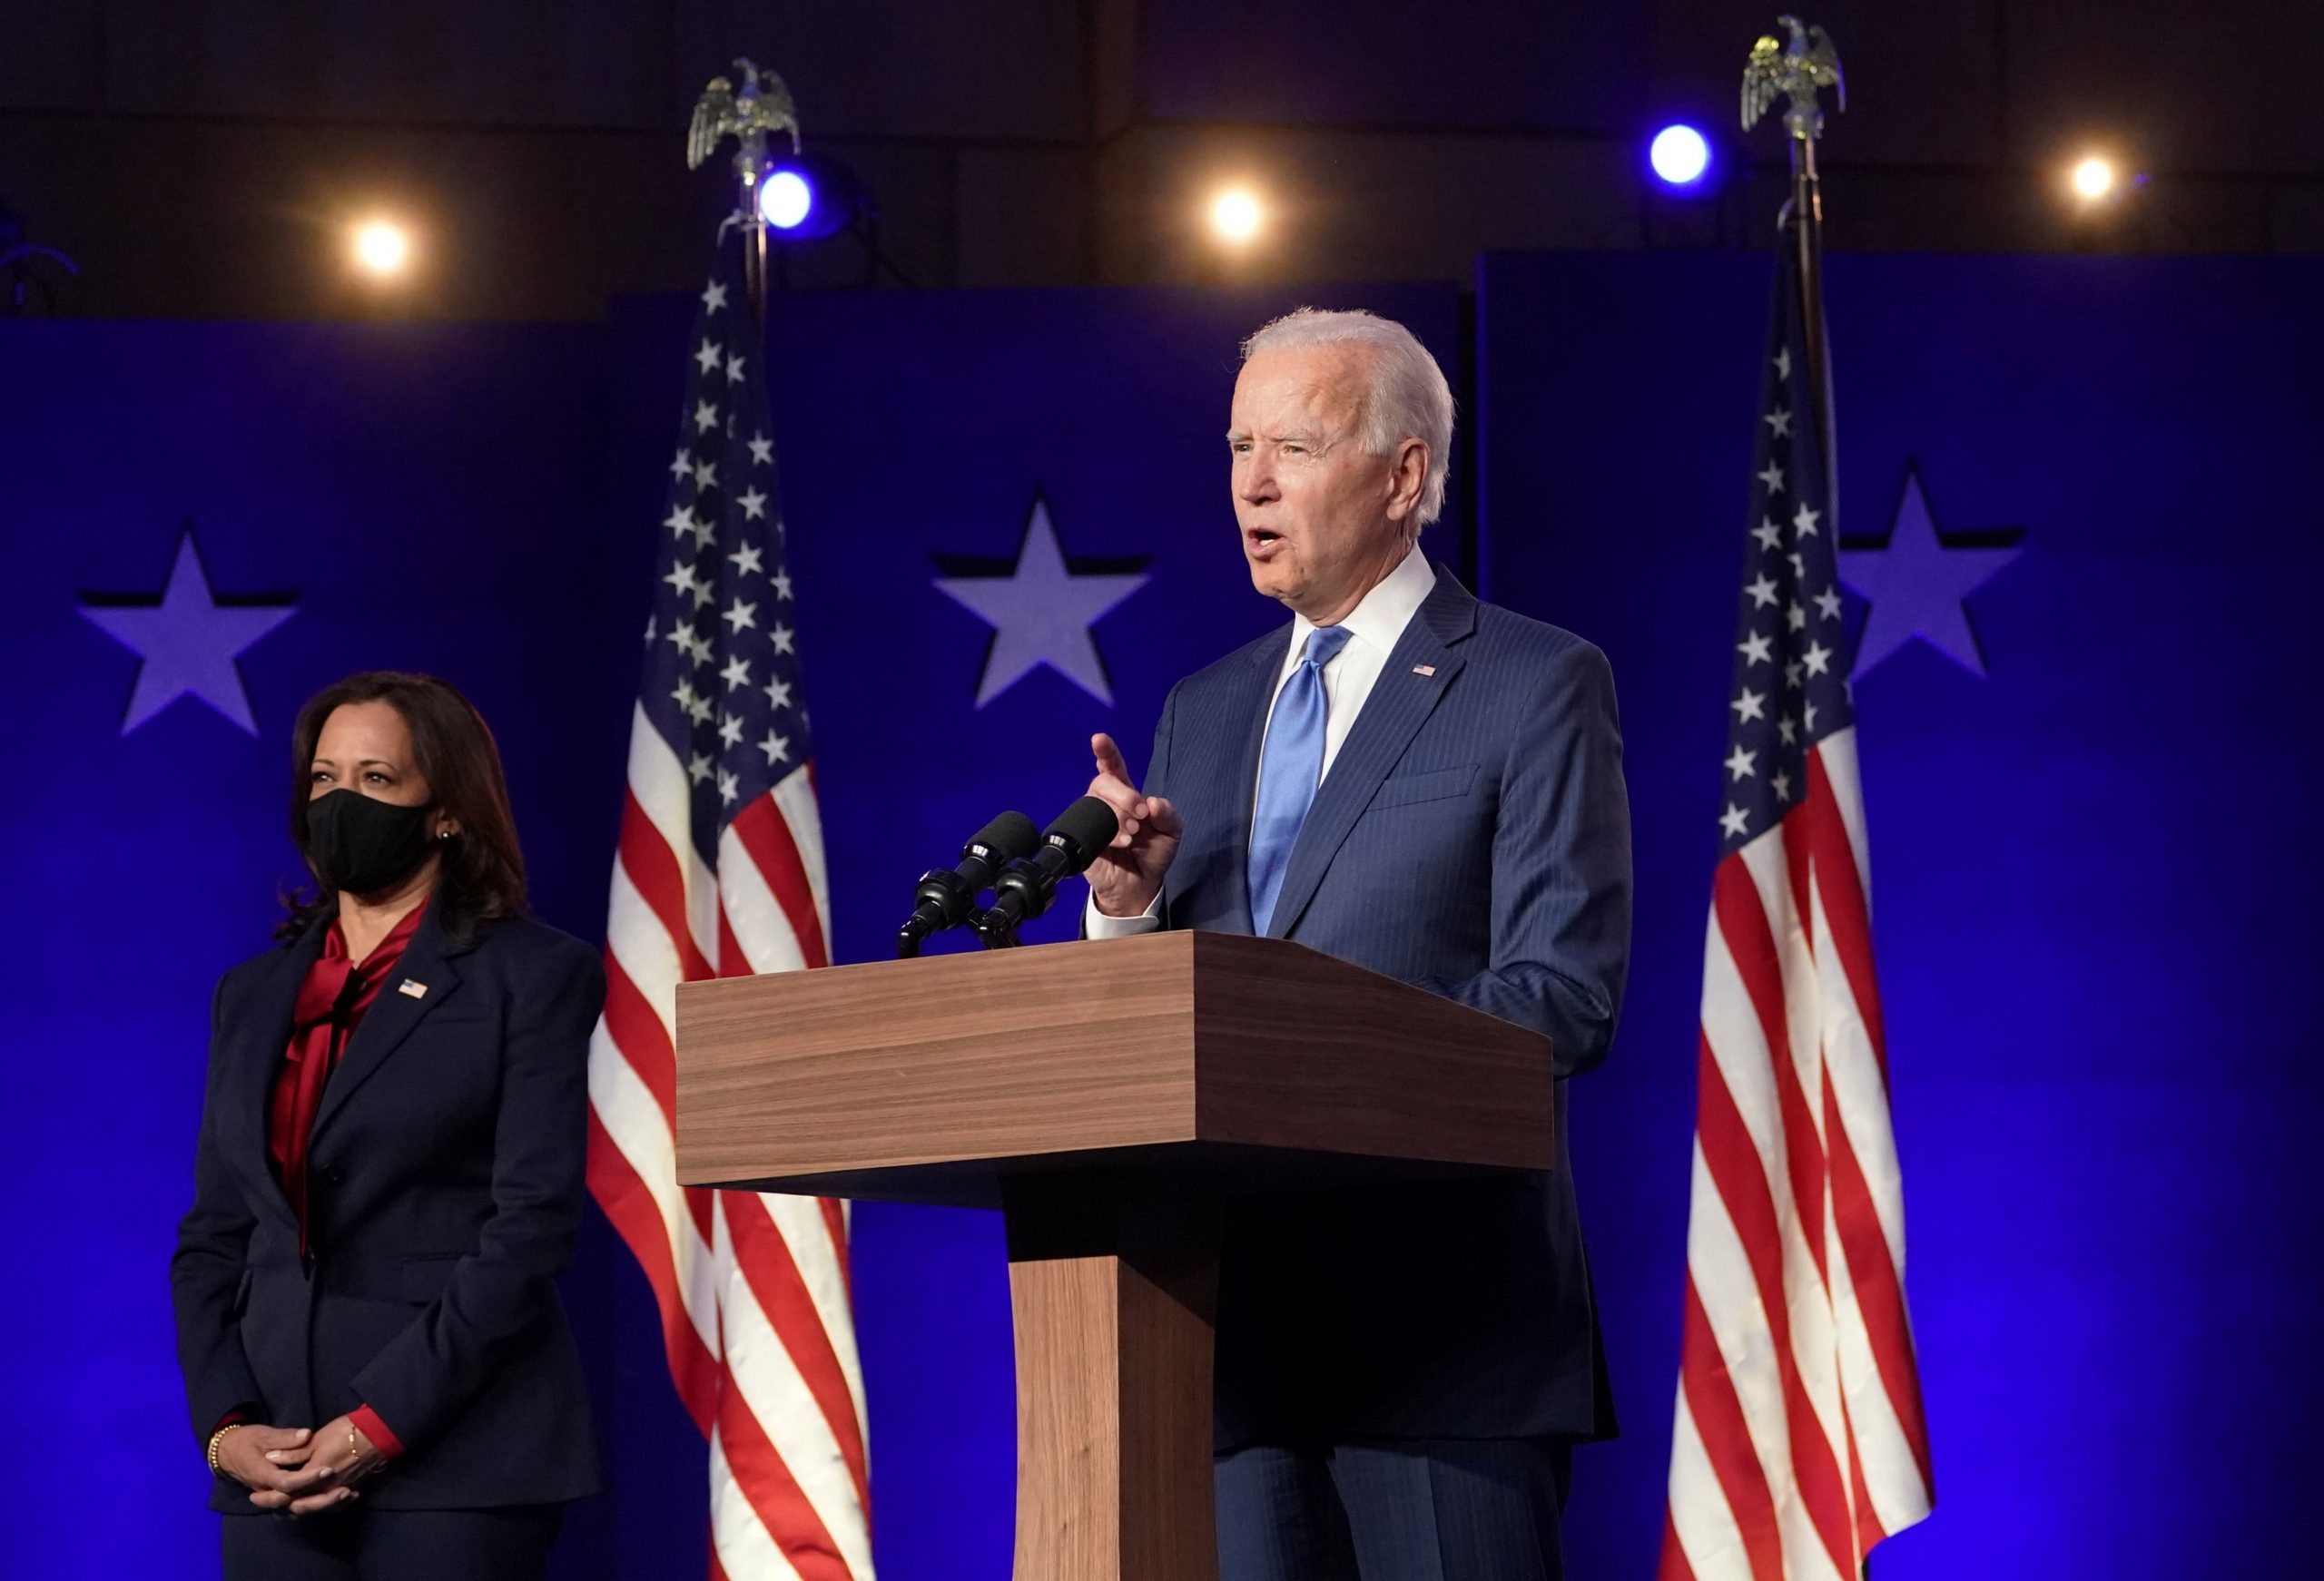 Kamala Harris en Joe Biden tijdens een toespraak op 6 november. De verkiezingsstrijd was toen nog niet beslist. Bron: Reuters